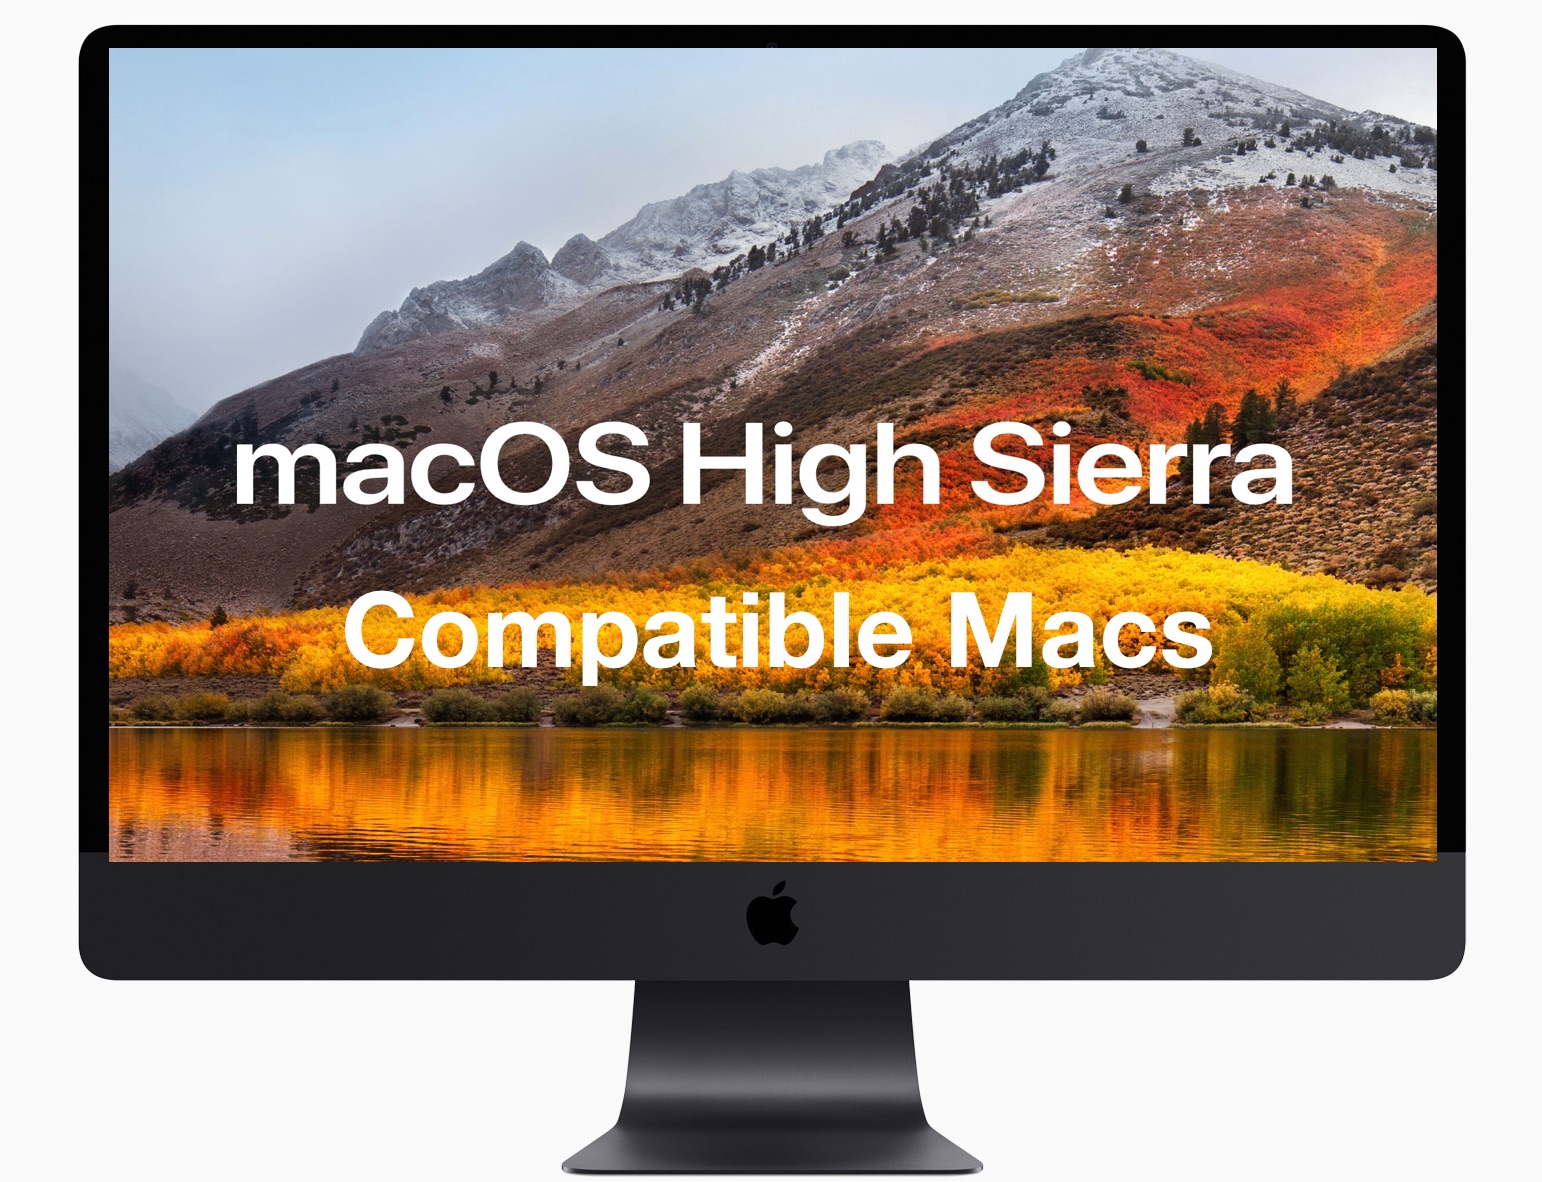 eos utility for mac os high sierra